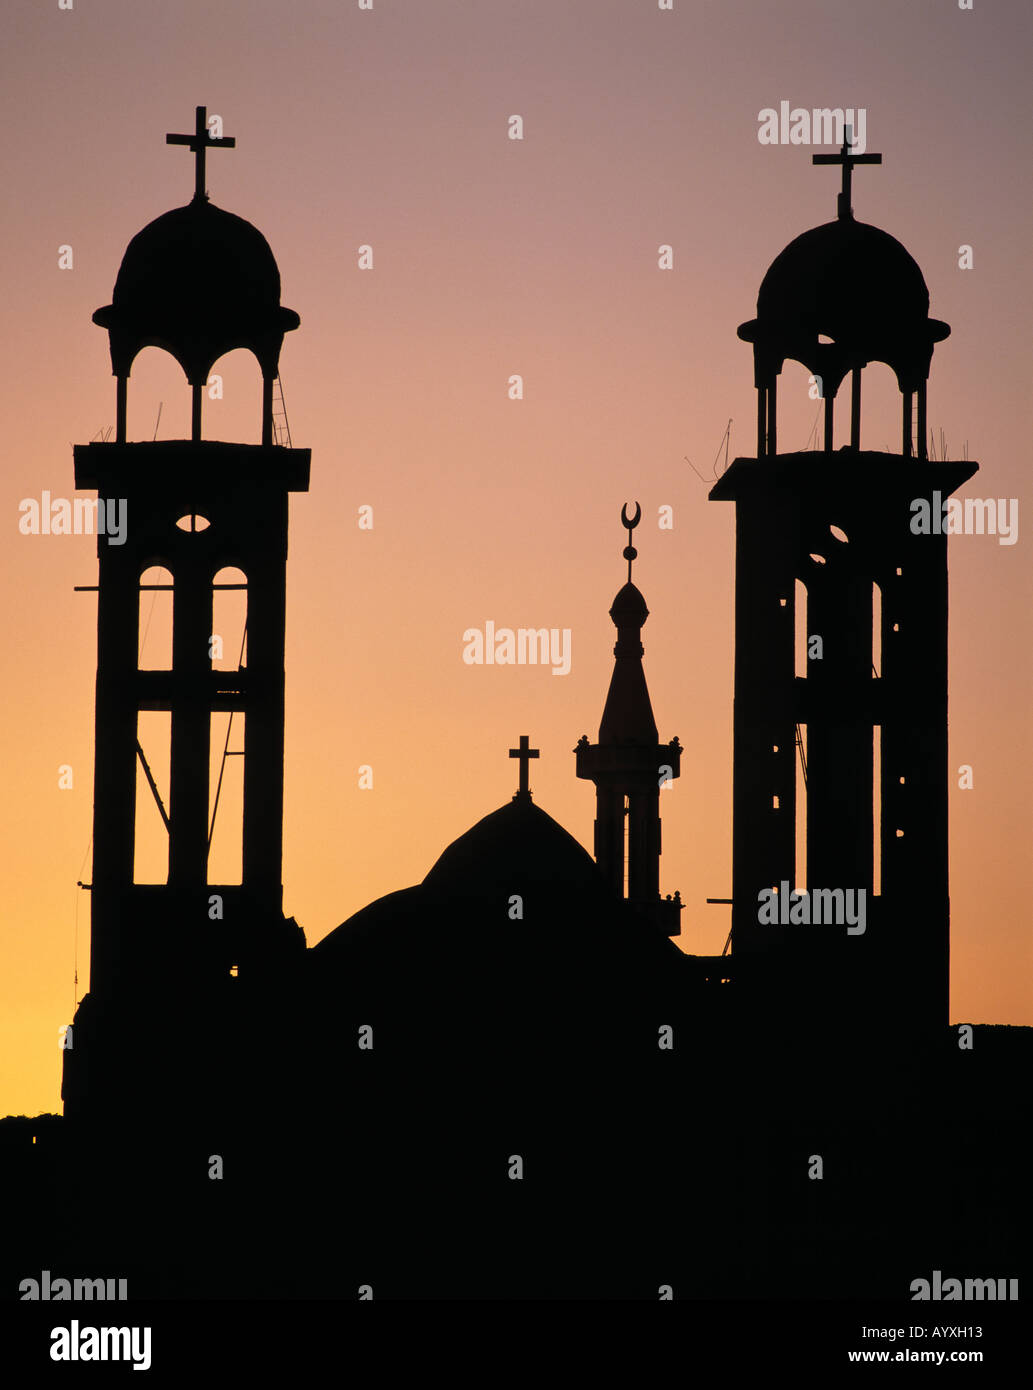 Koptische Kirche und Minarett Abendhimmel vor, Sonnenuntergang, Silhouette, Schattenriss Foto Stock